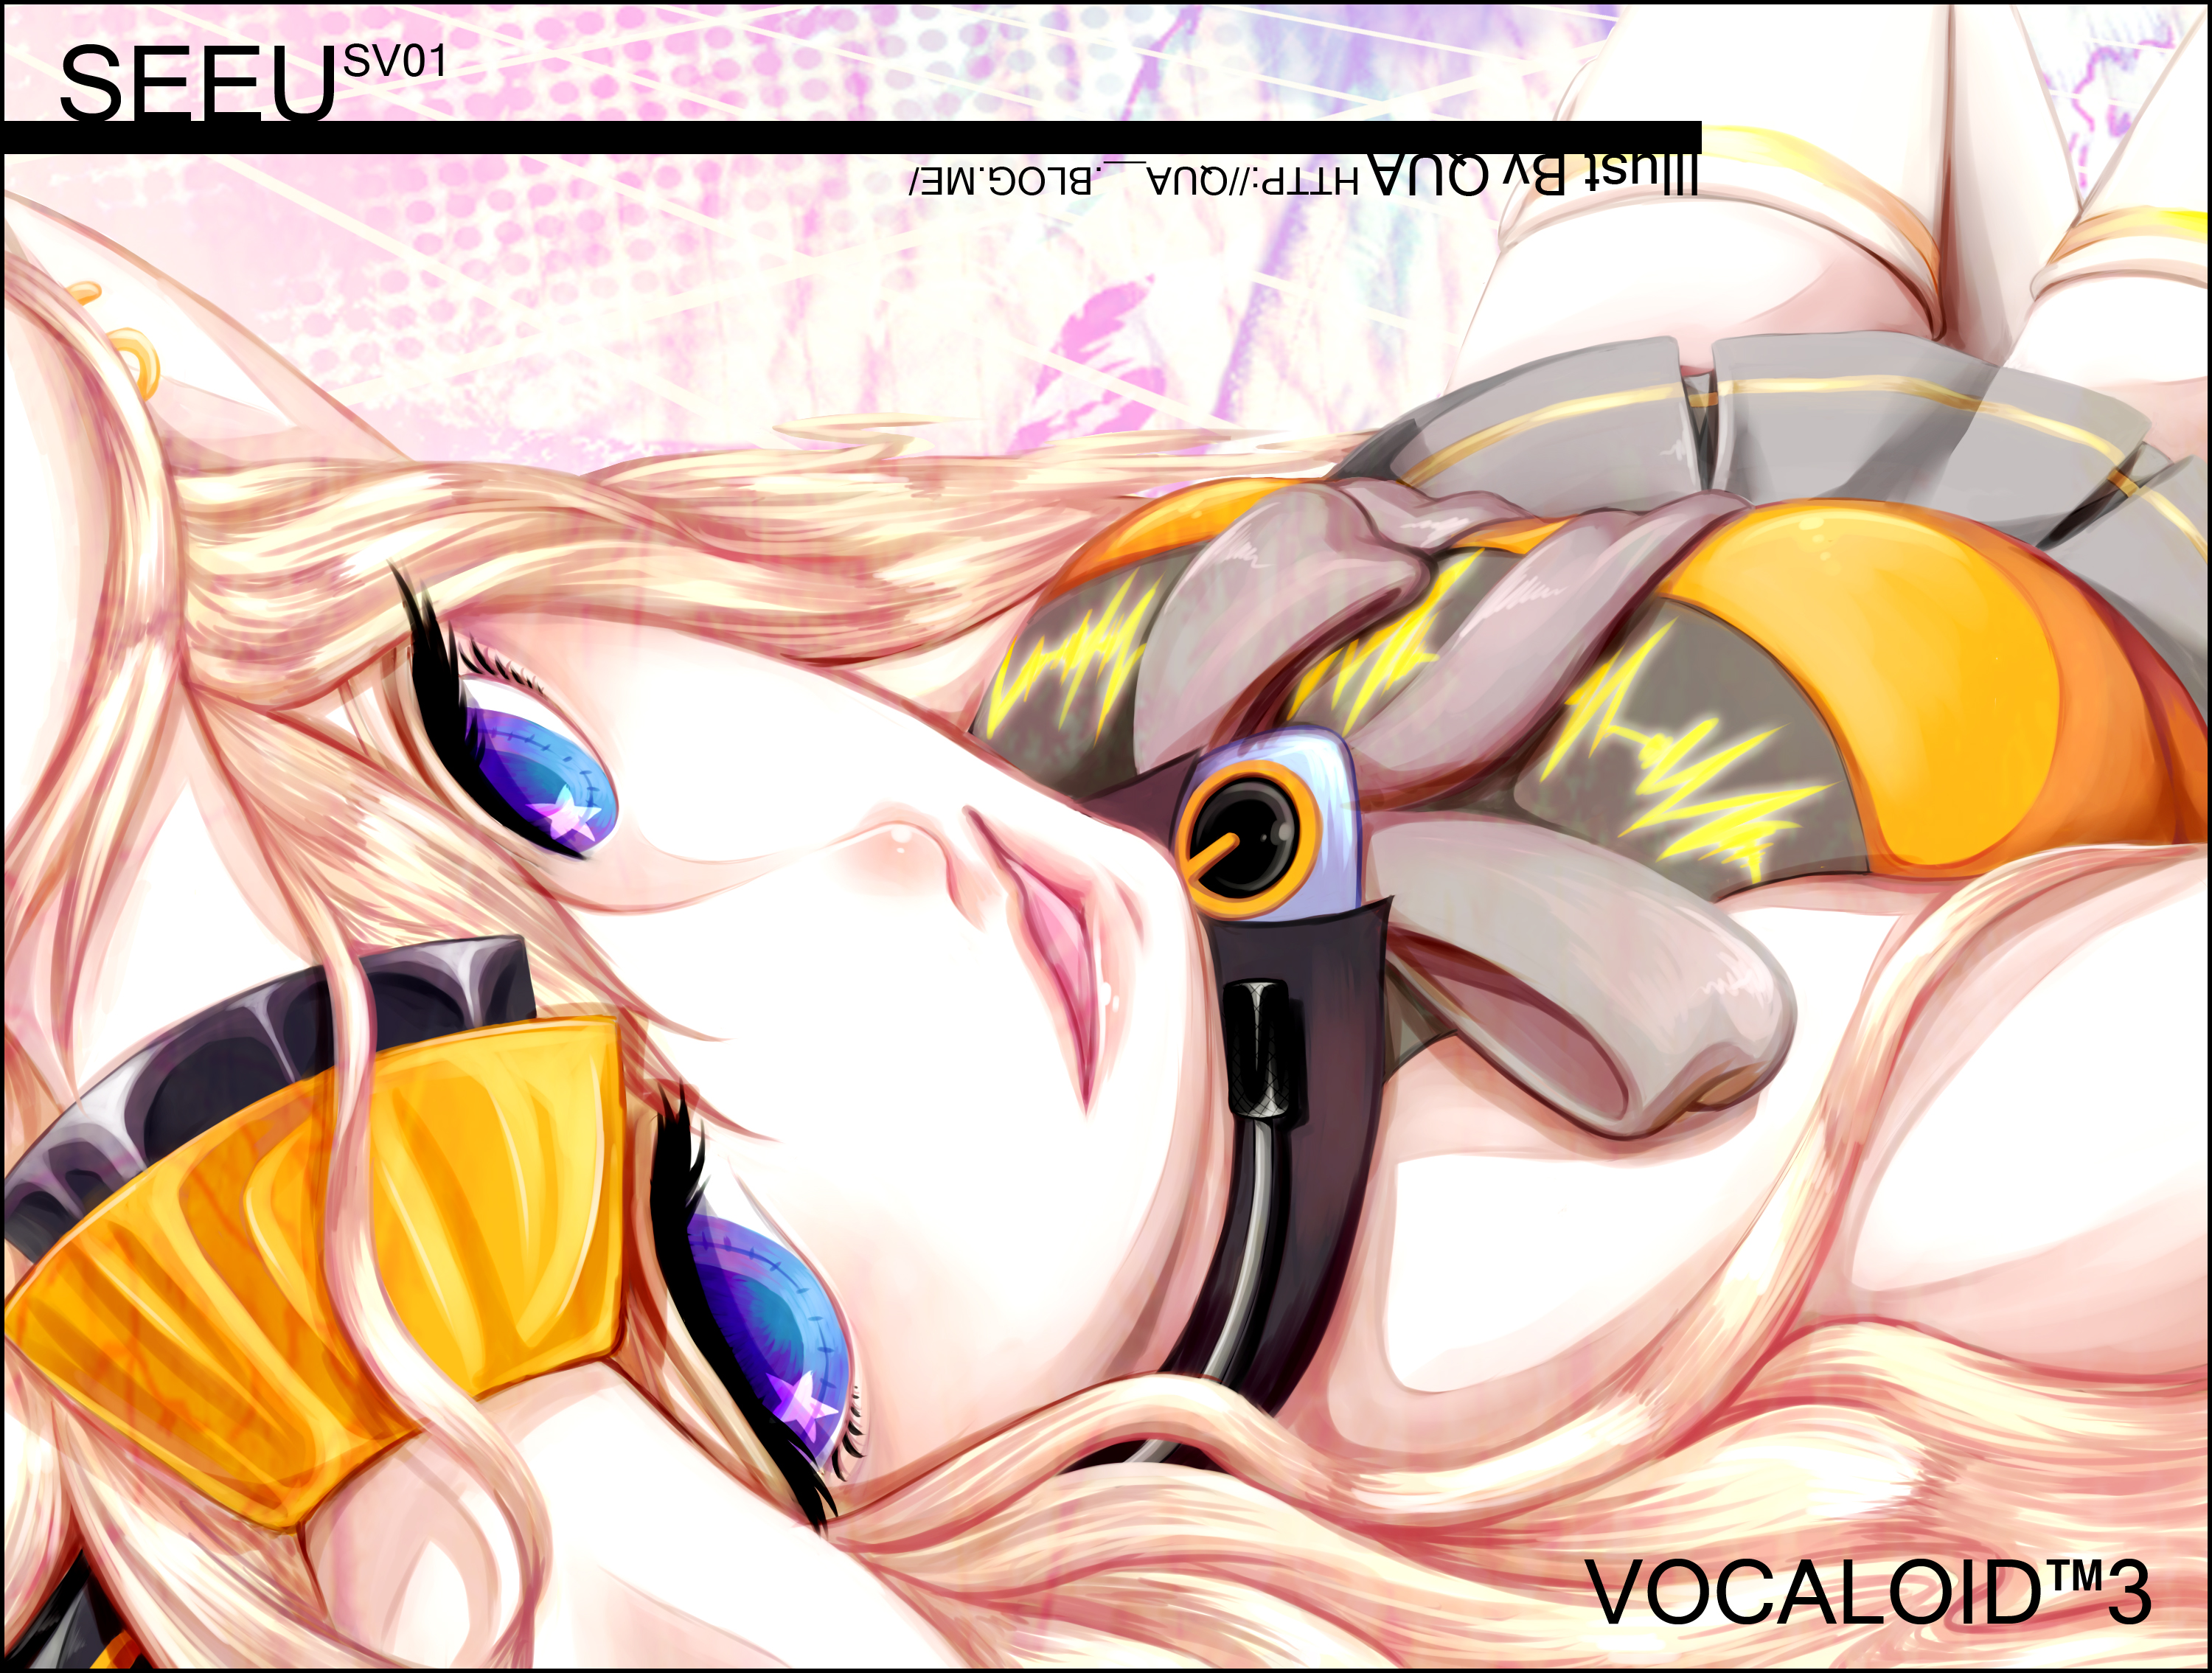 SeeU Vocaloid 3000x2269